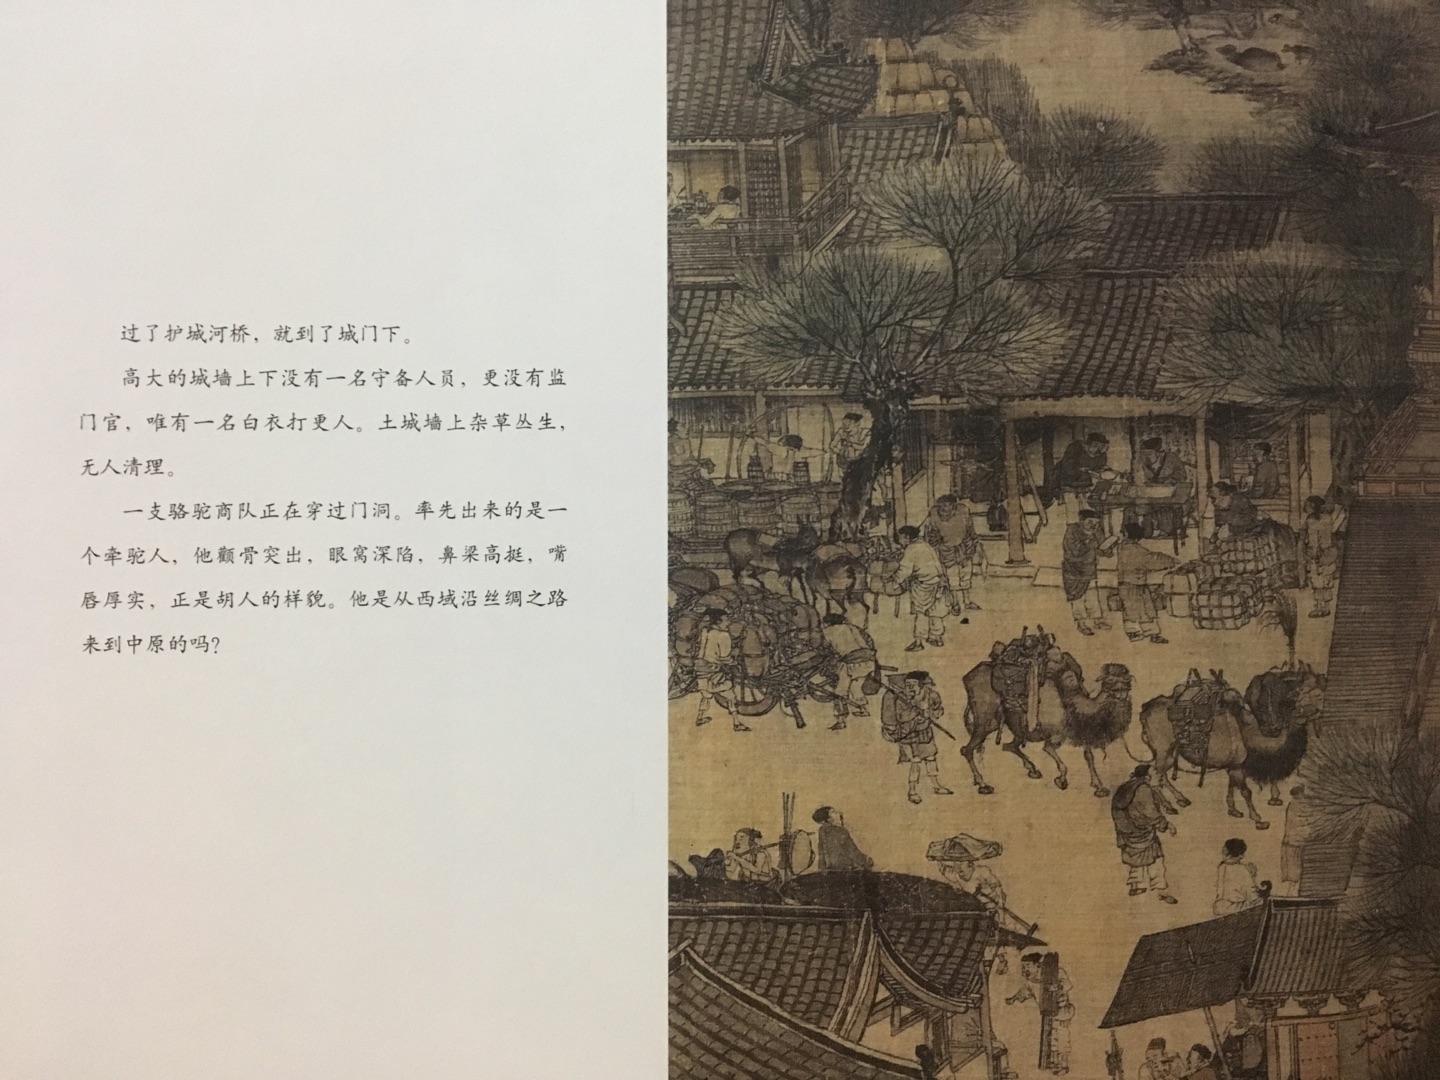 最近遇到的非常好的书 印刷精美 内容特别好 带领着体验中国画的美